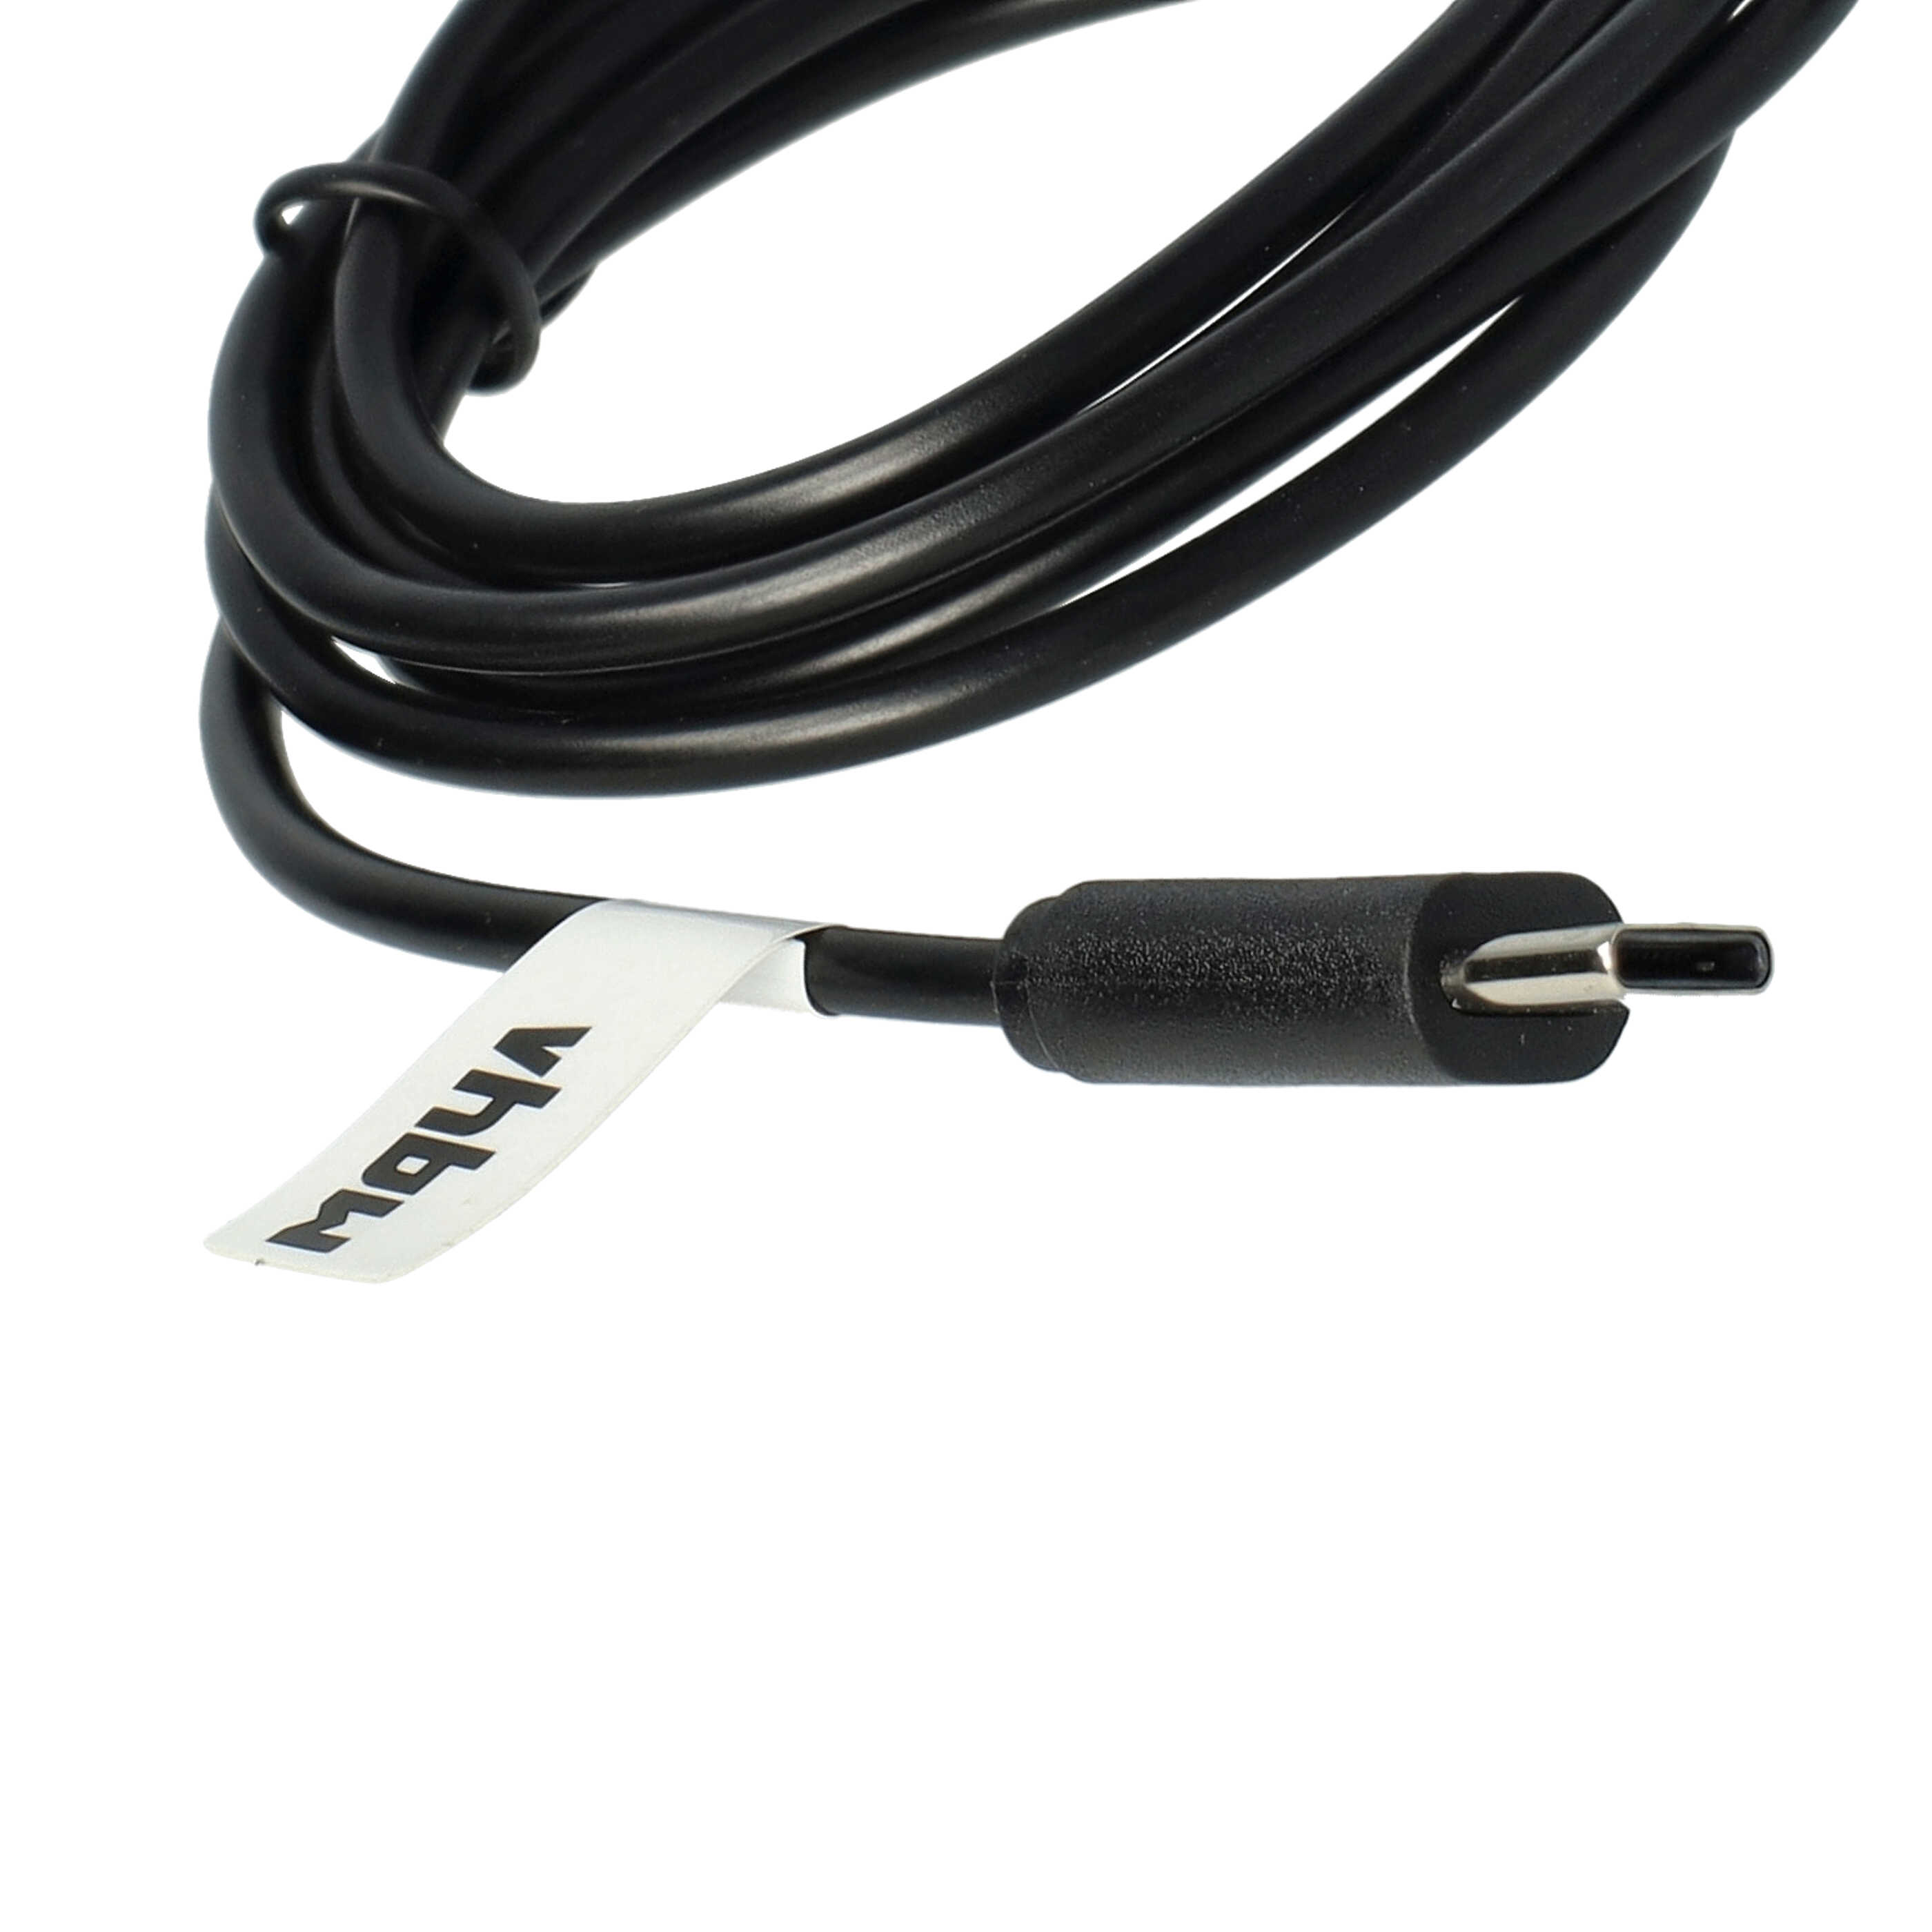 Kabel do ładowania smartwatch Garmin zamiennik Garmin 010-13289-00 - Kabel USB C, 100 cm, czarny